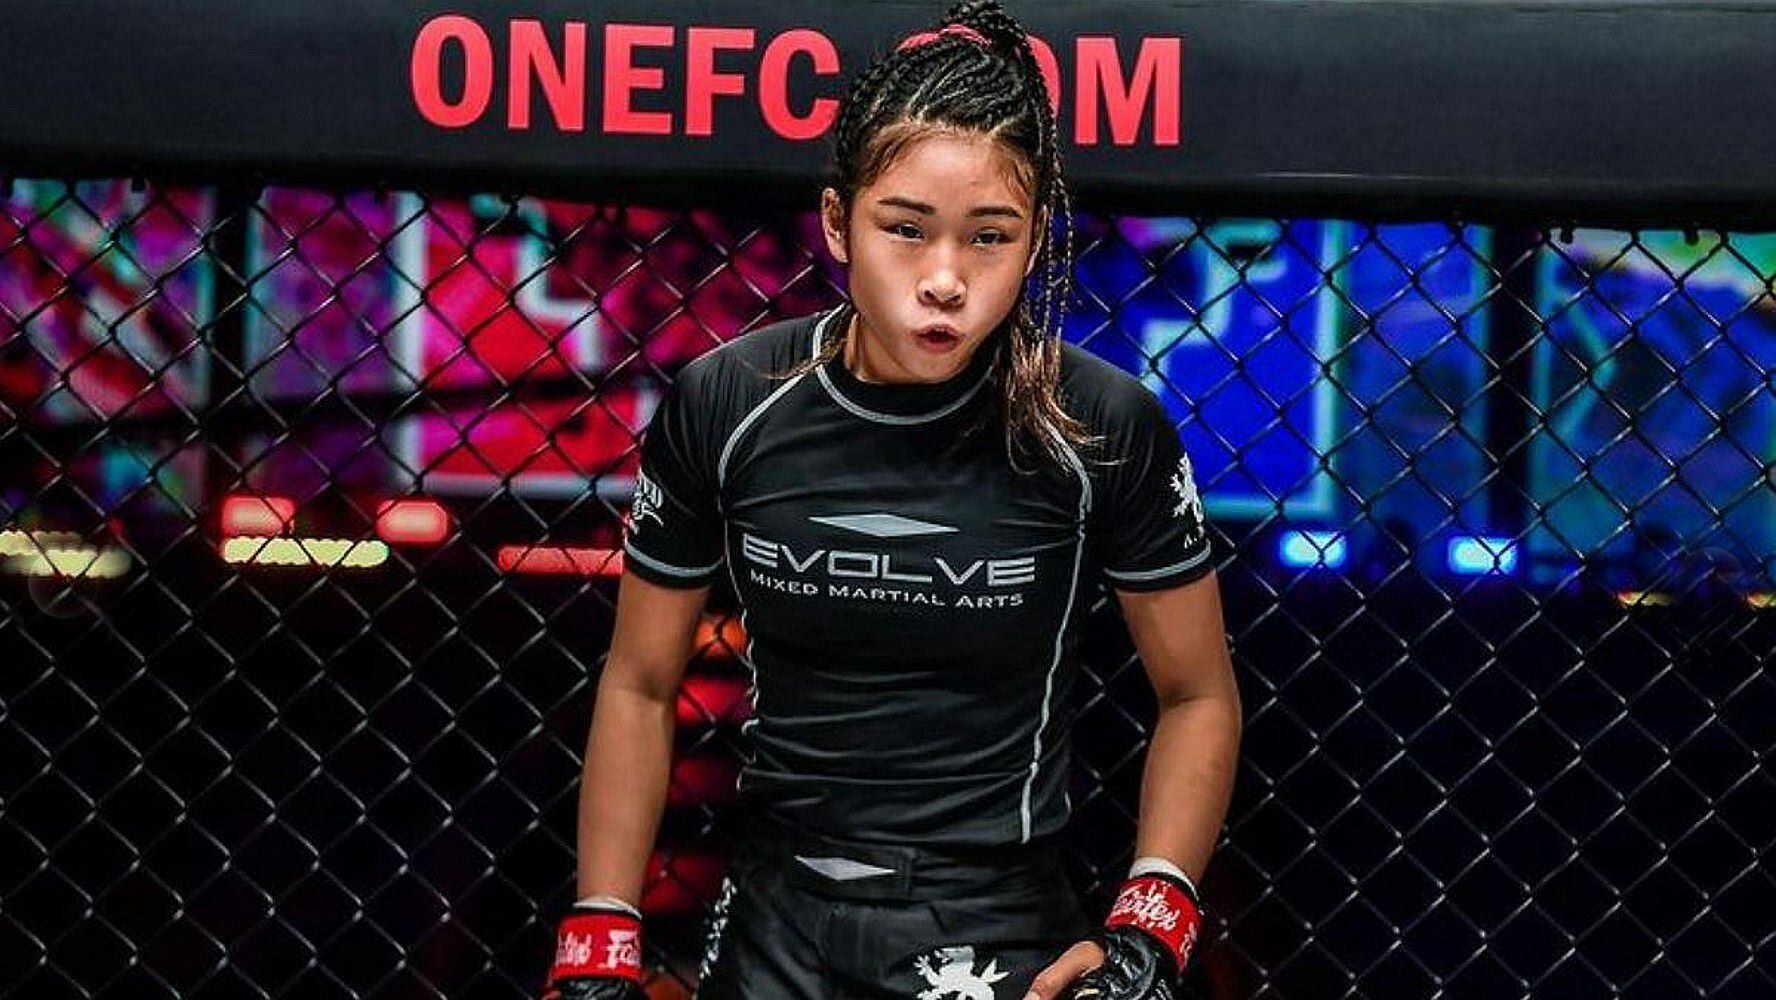 Fallece peleadora Victoria Lee, promesa de las artes marciales mixtas, a los 18 años